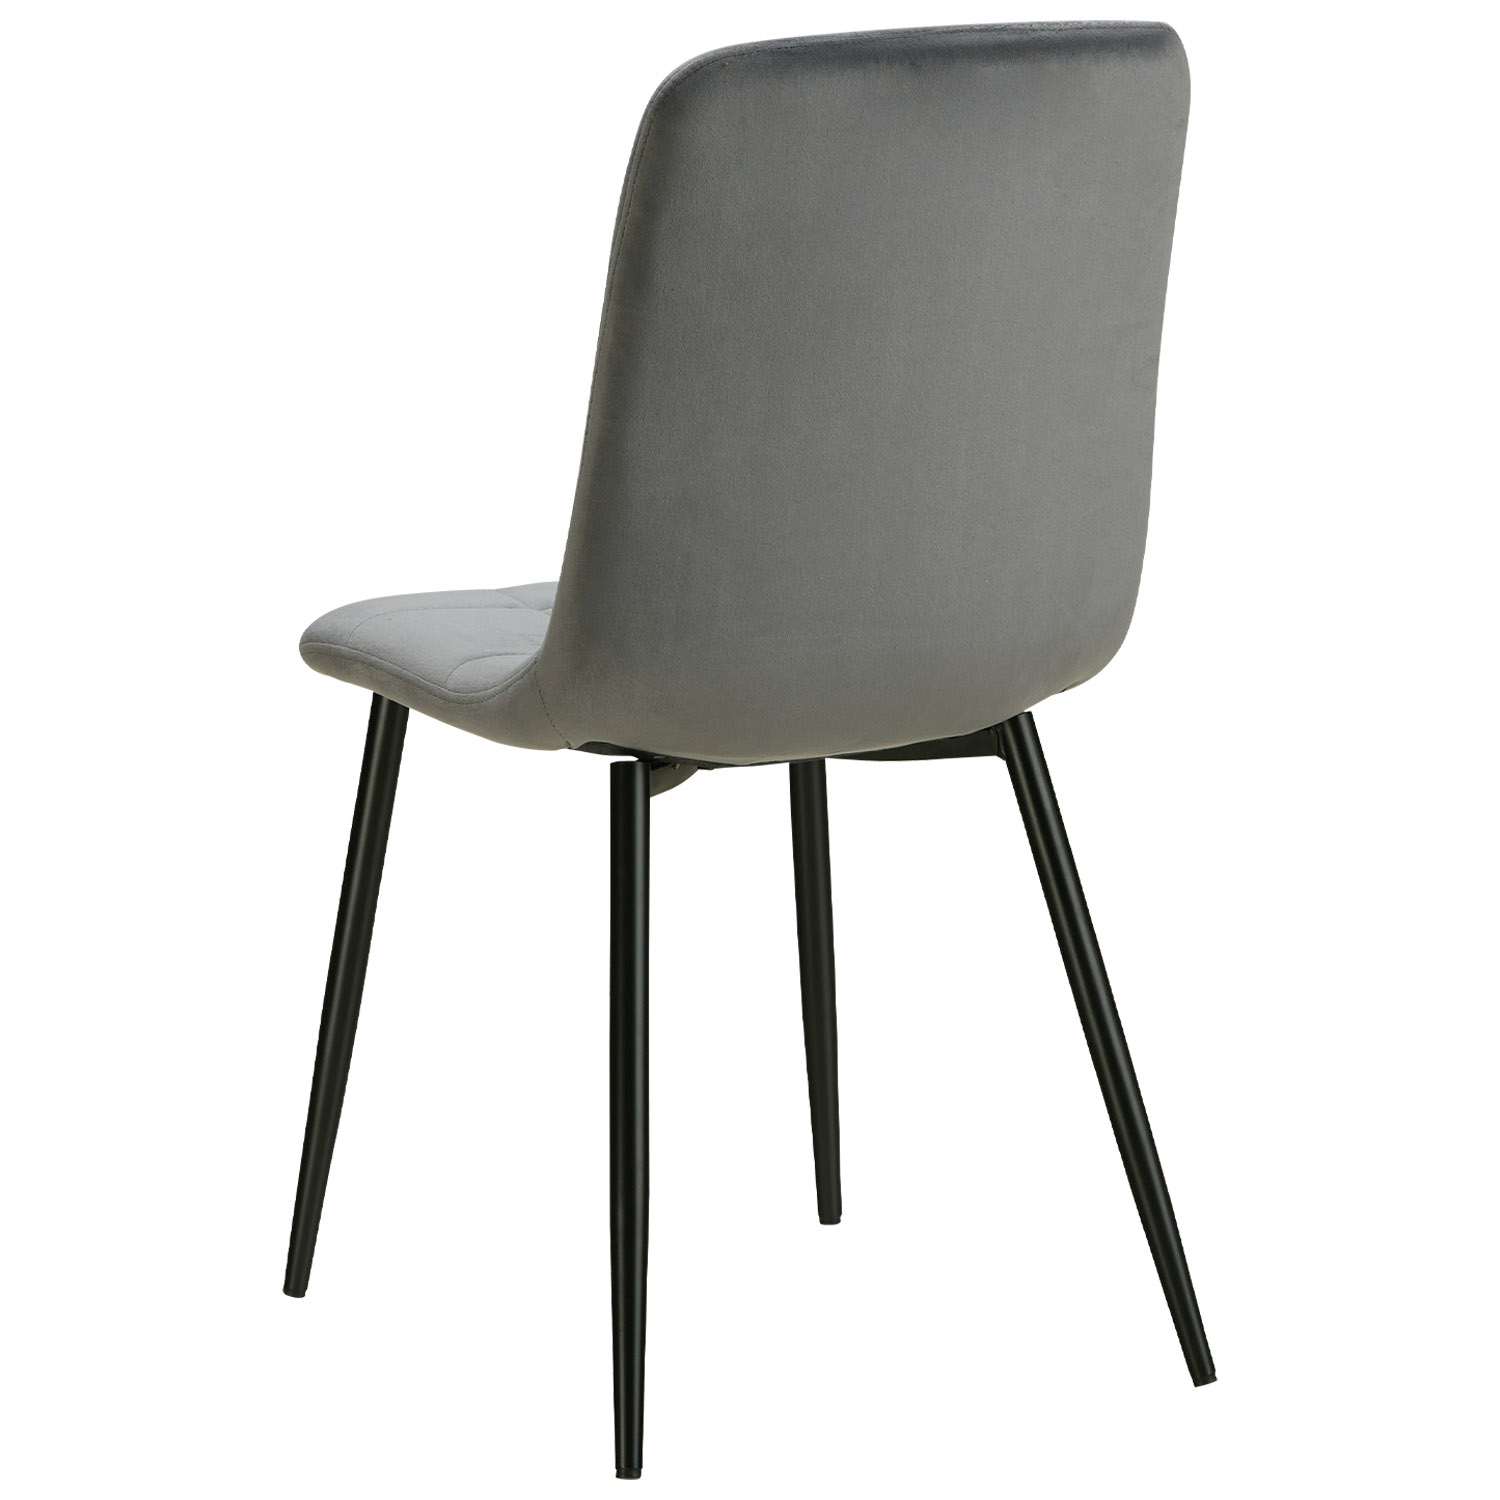 Esszimmerstuhl 1, 2, 4, 6 Stühle Grau Creme Samt Leinen Esstisch Stuhl Küchenstuhl Polsterstuhl Modern